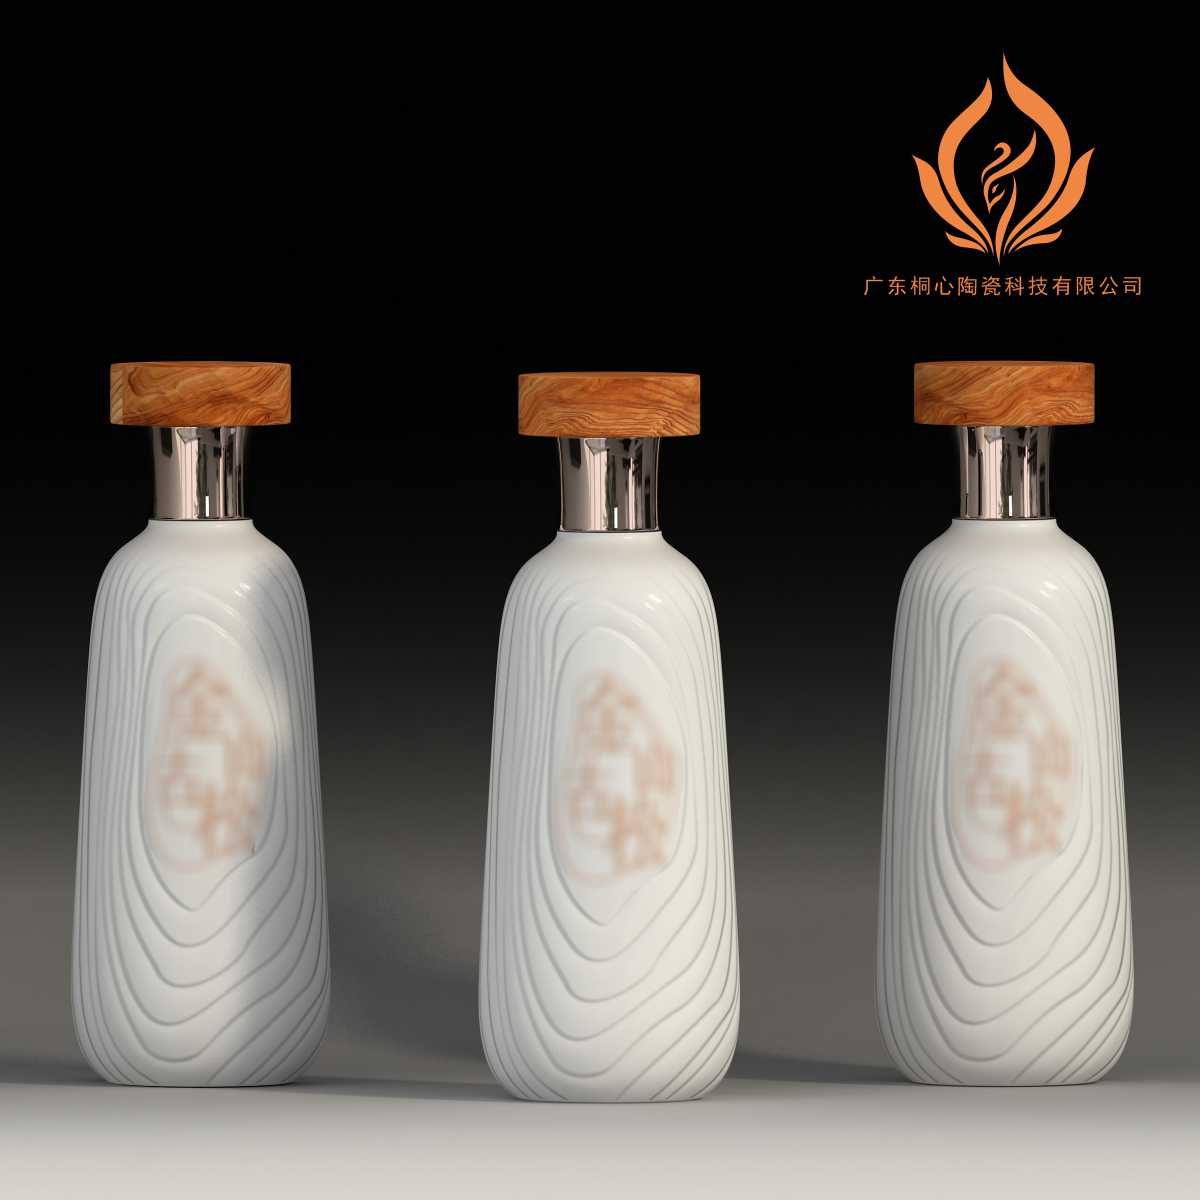 陶瓷酒瓶包材系列